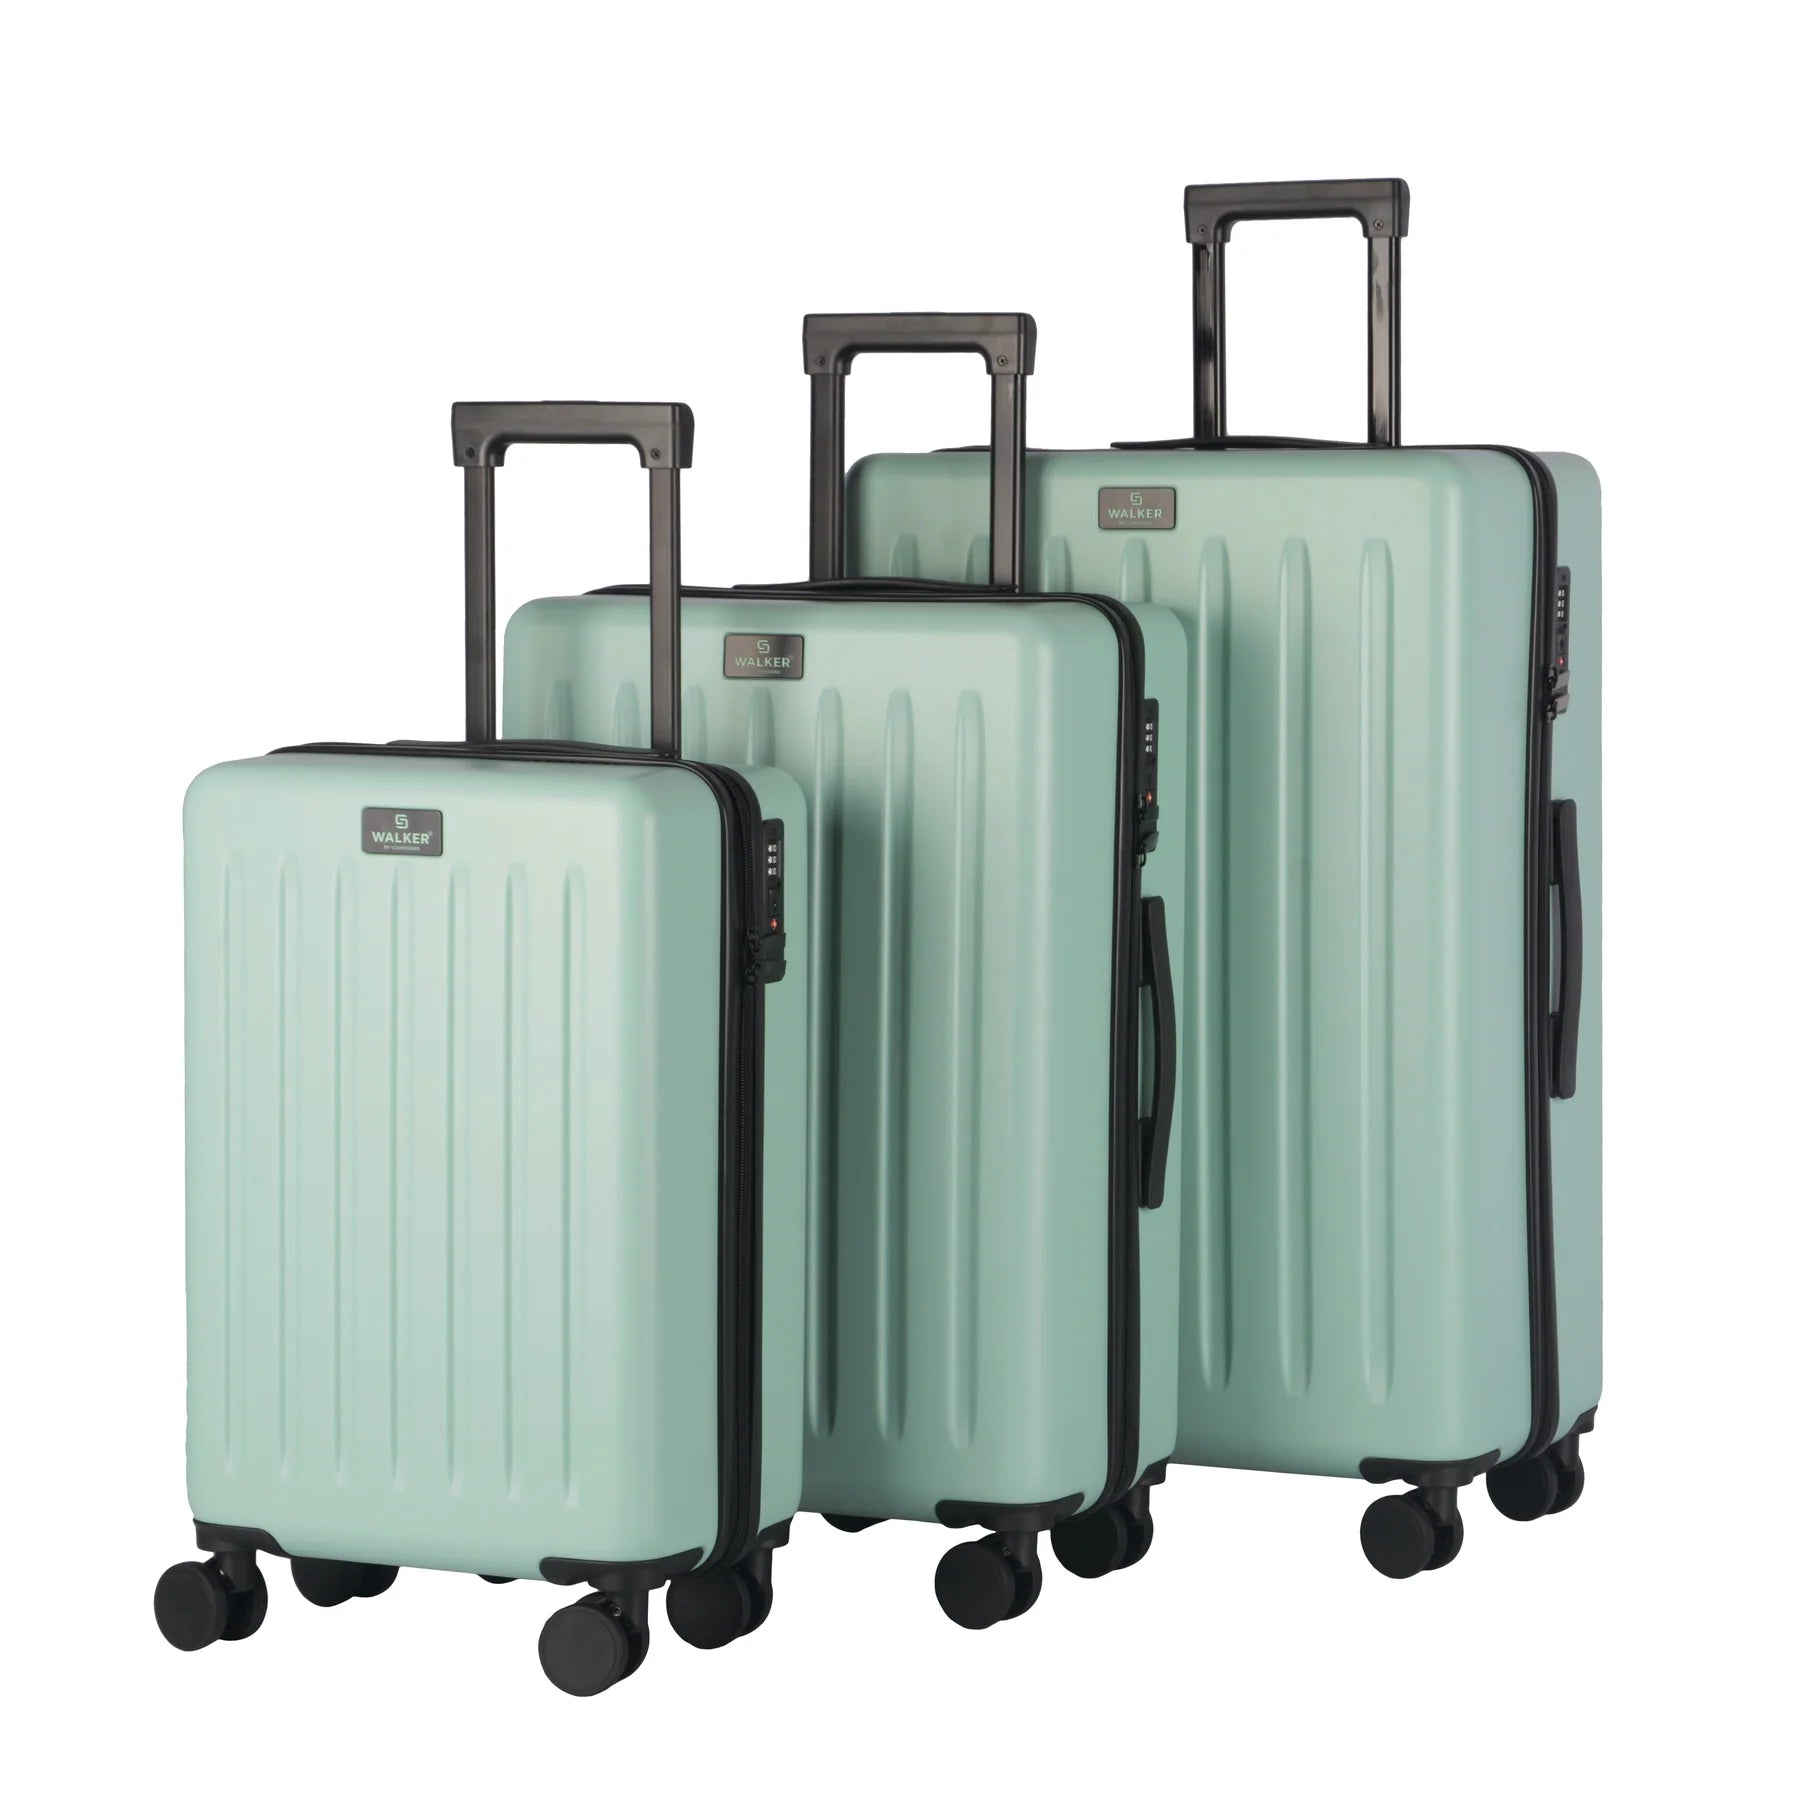 Walker Florida 3-piece suitcase set - Malibu